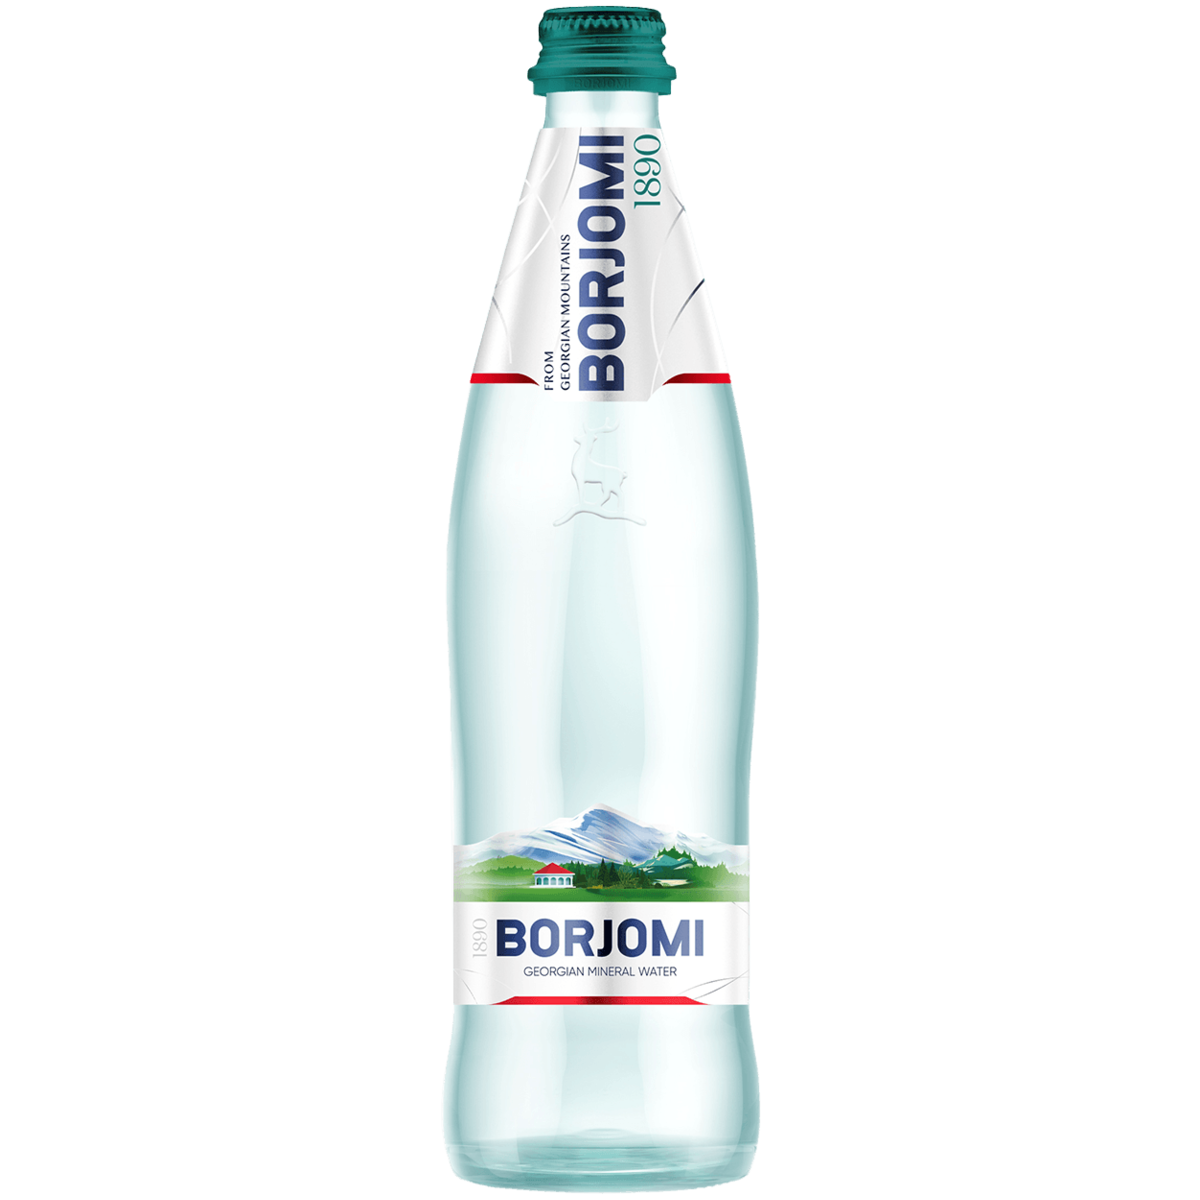 Вода питьевая минеральная Borjomi 0,5 л - купить в Мегамаркет Москва Пушкино, цена на Мегамаркет